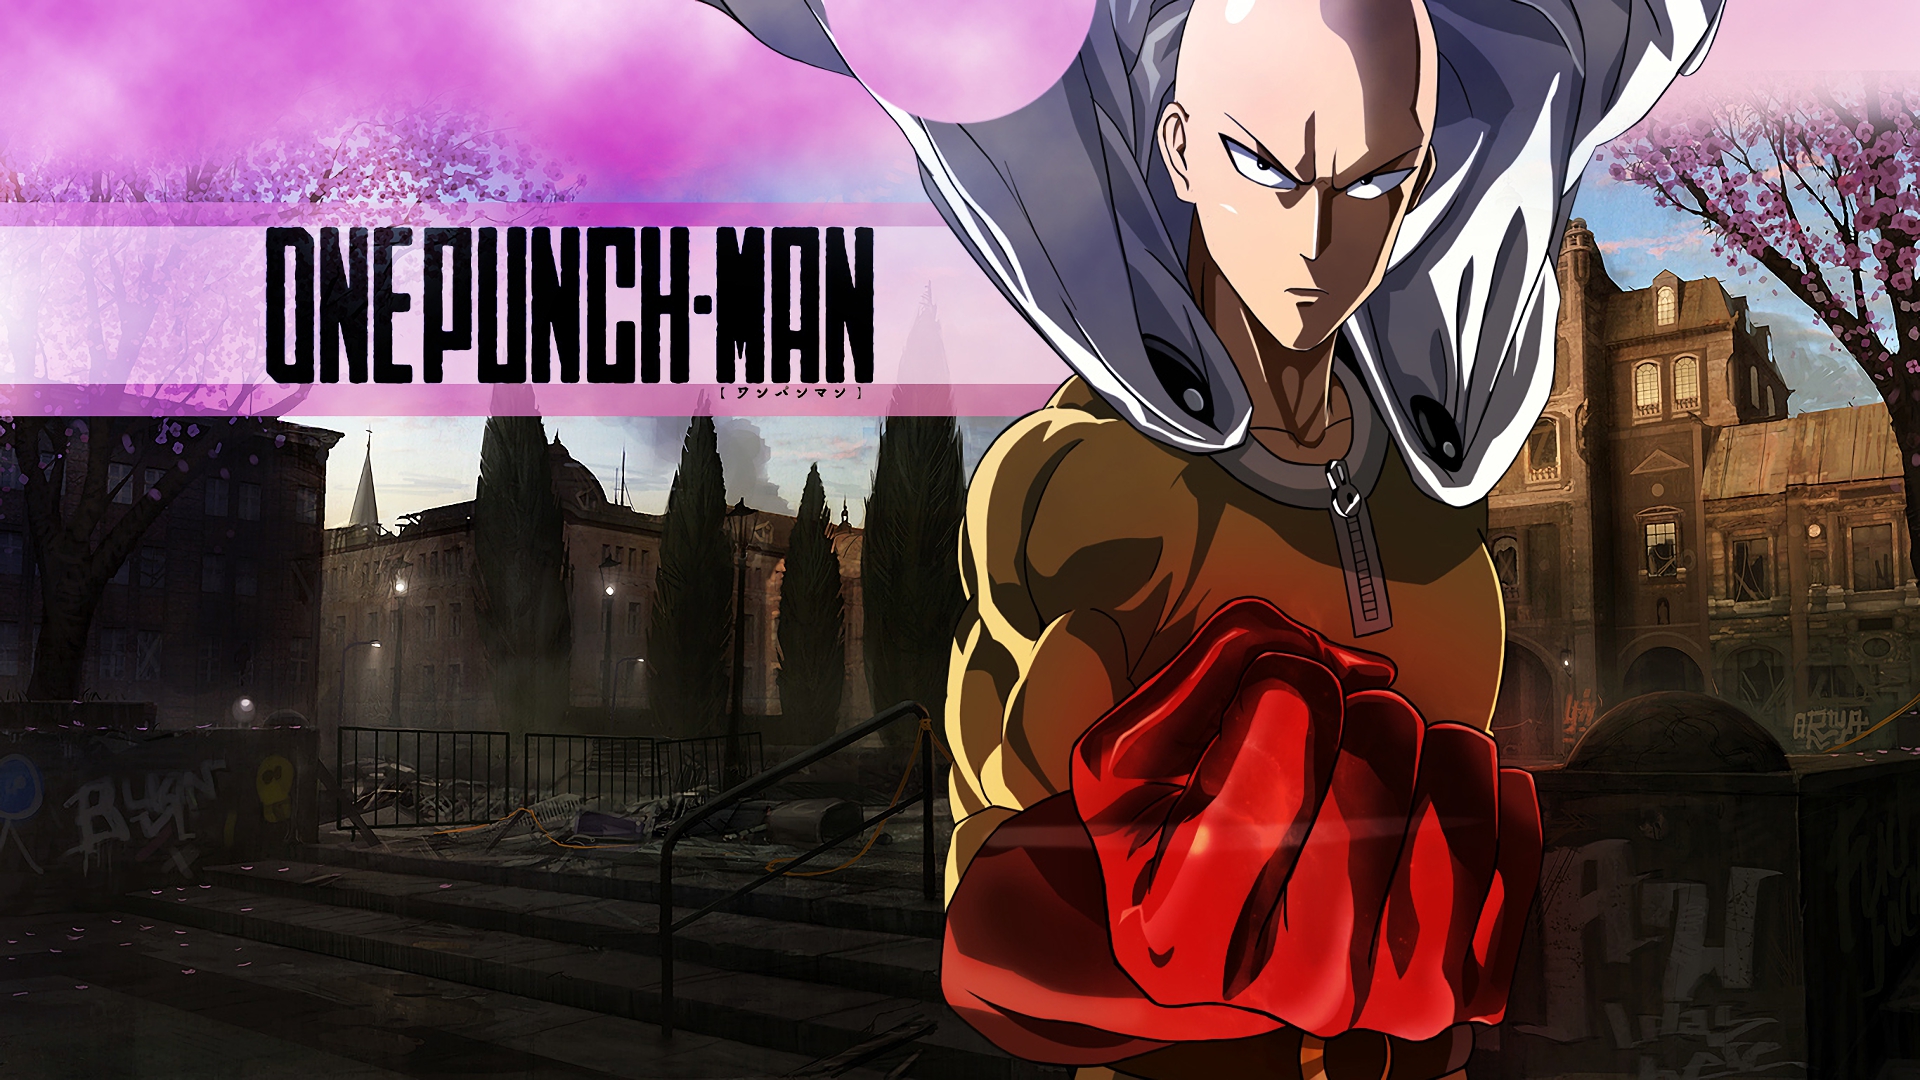 One-Punch Man là một bộ anime hành động vui nhộn, đầy tính hài hước và chiến đấu kịch tính. Cùng xem hình ảnh liên quan để đắm chìm trong thế giới đầy sức mạnh của Saitama, người hùng độc giả với một đòn đấm duy nhất.